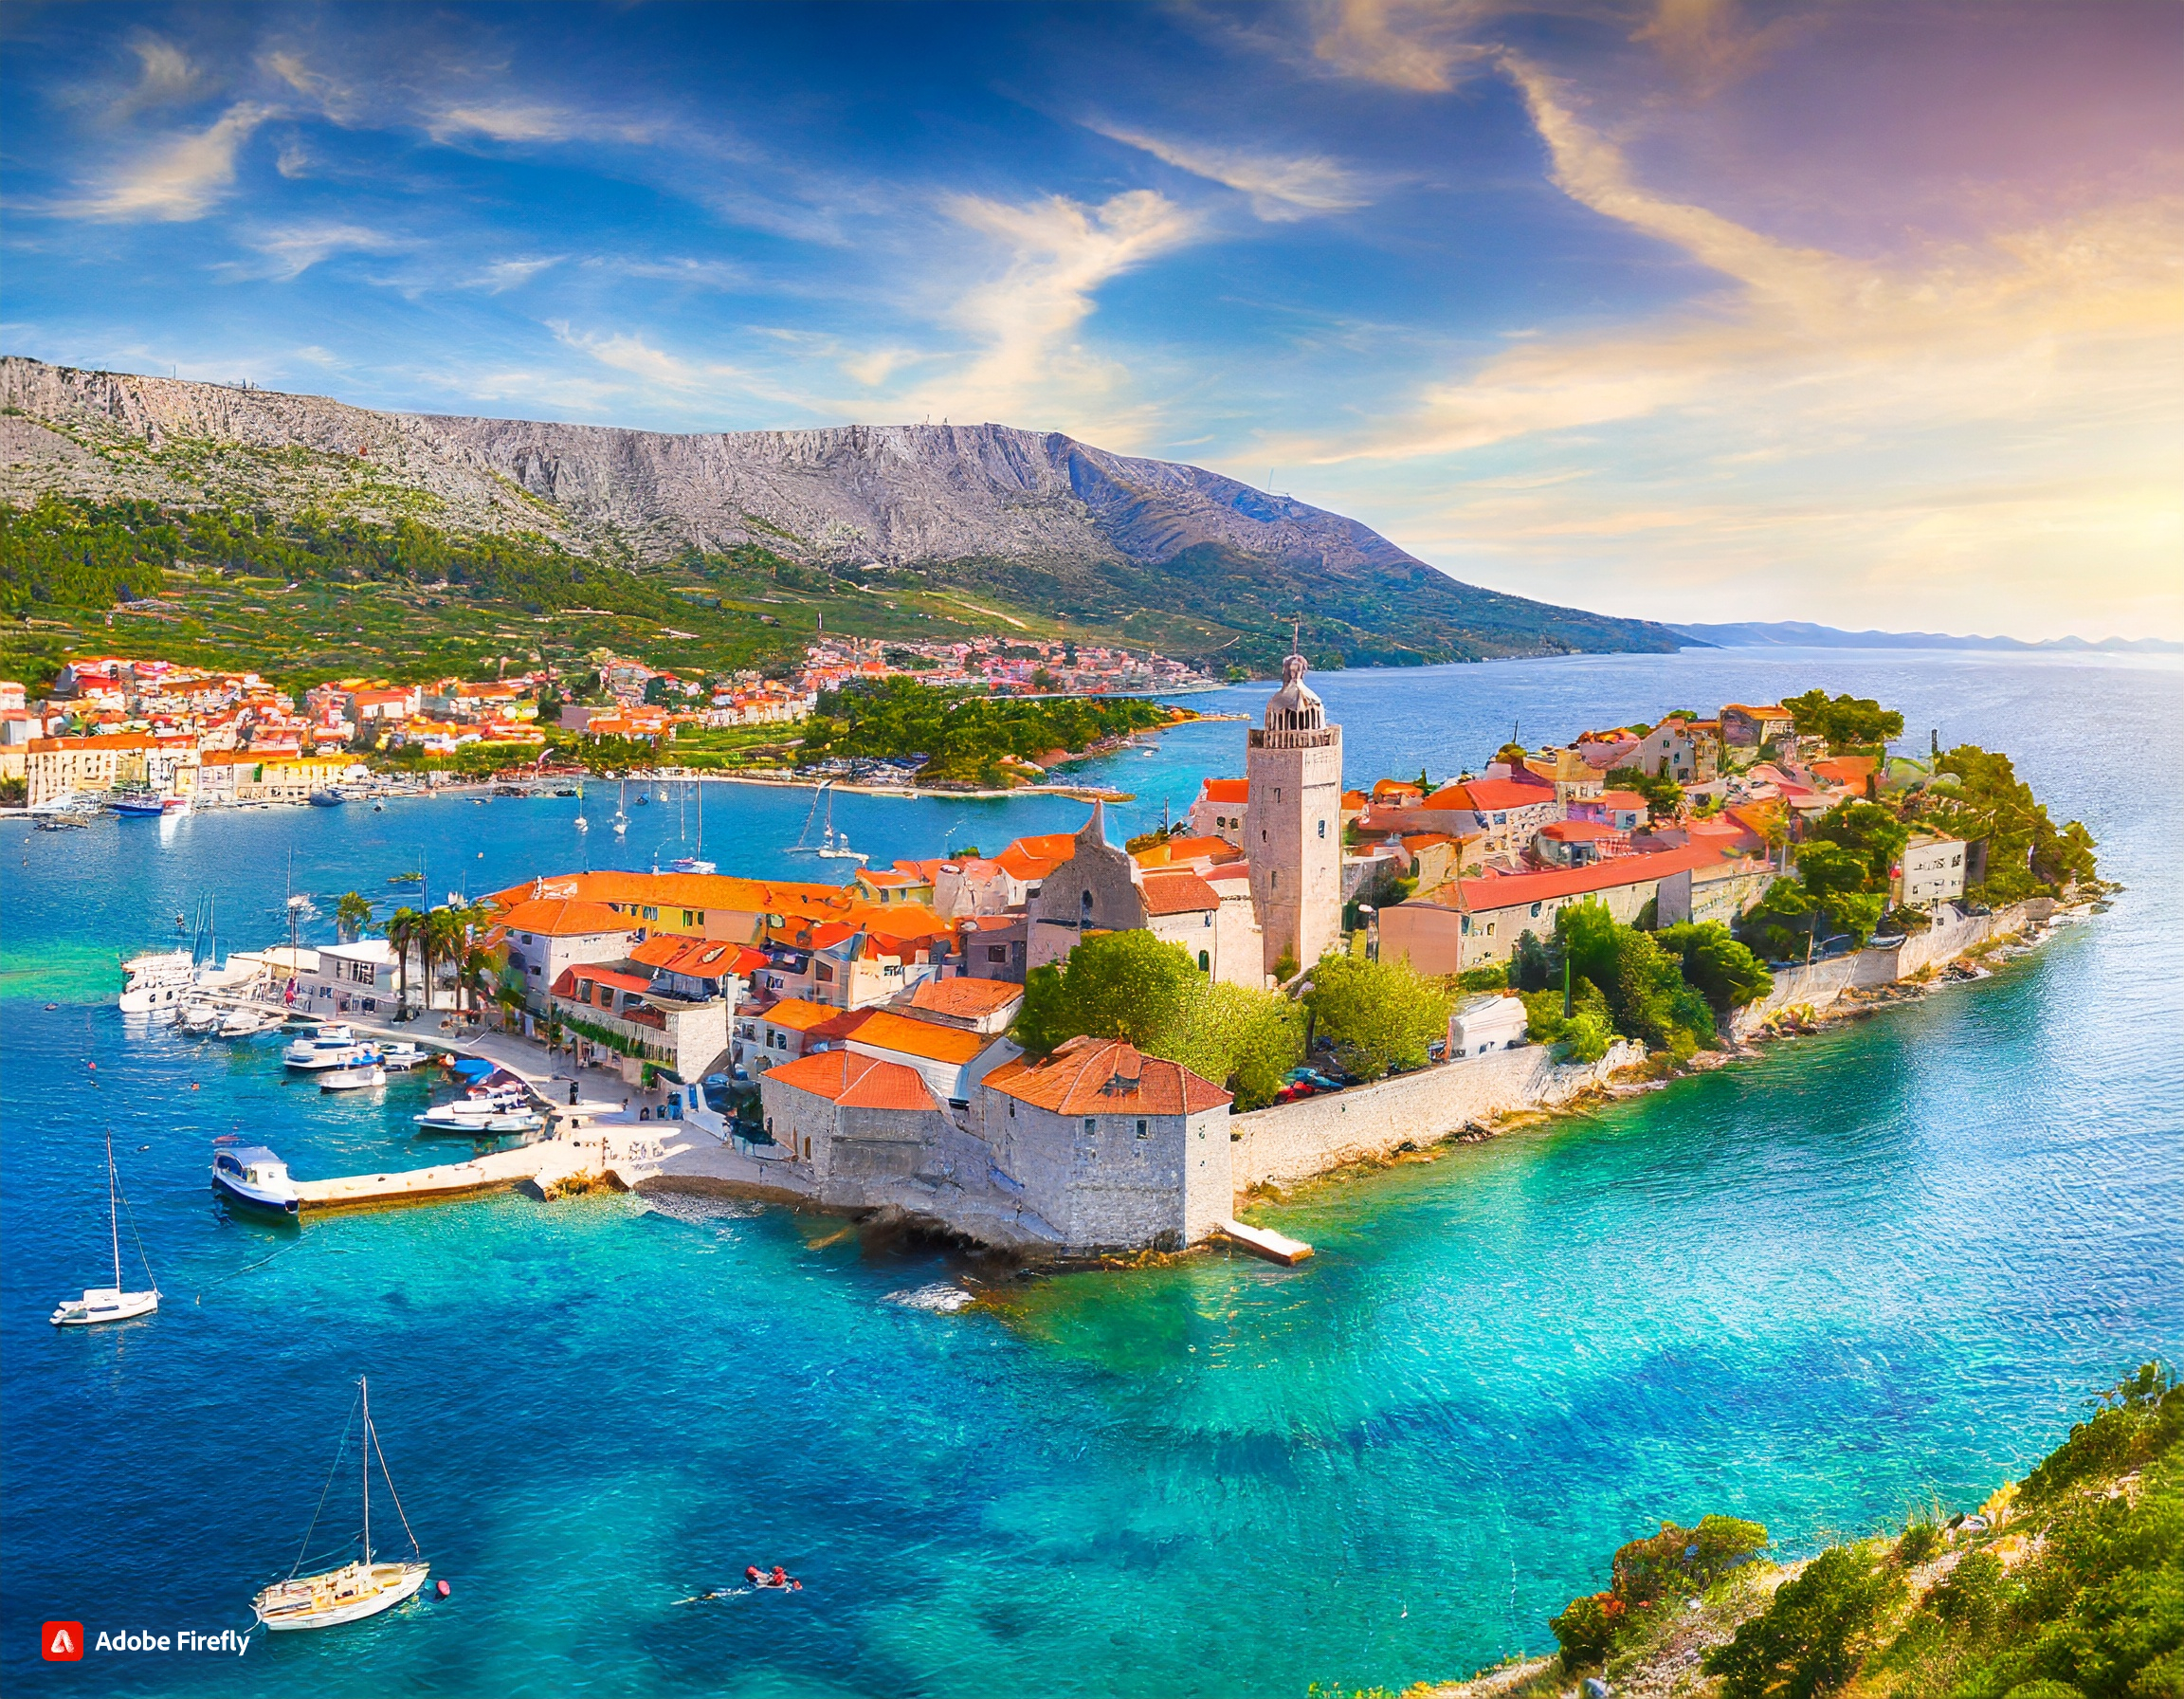 Ferienhäuser in Kroatien: Ein Paradies für Urlaubssuchende | Gutscheincode oder Rabatt sichern!